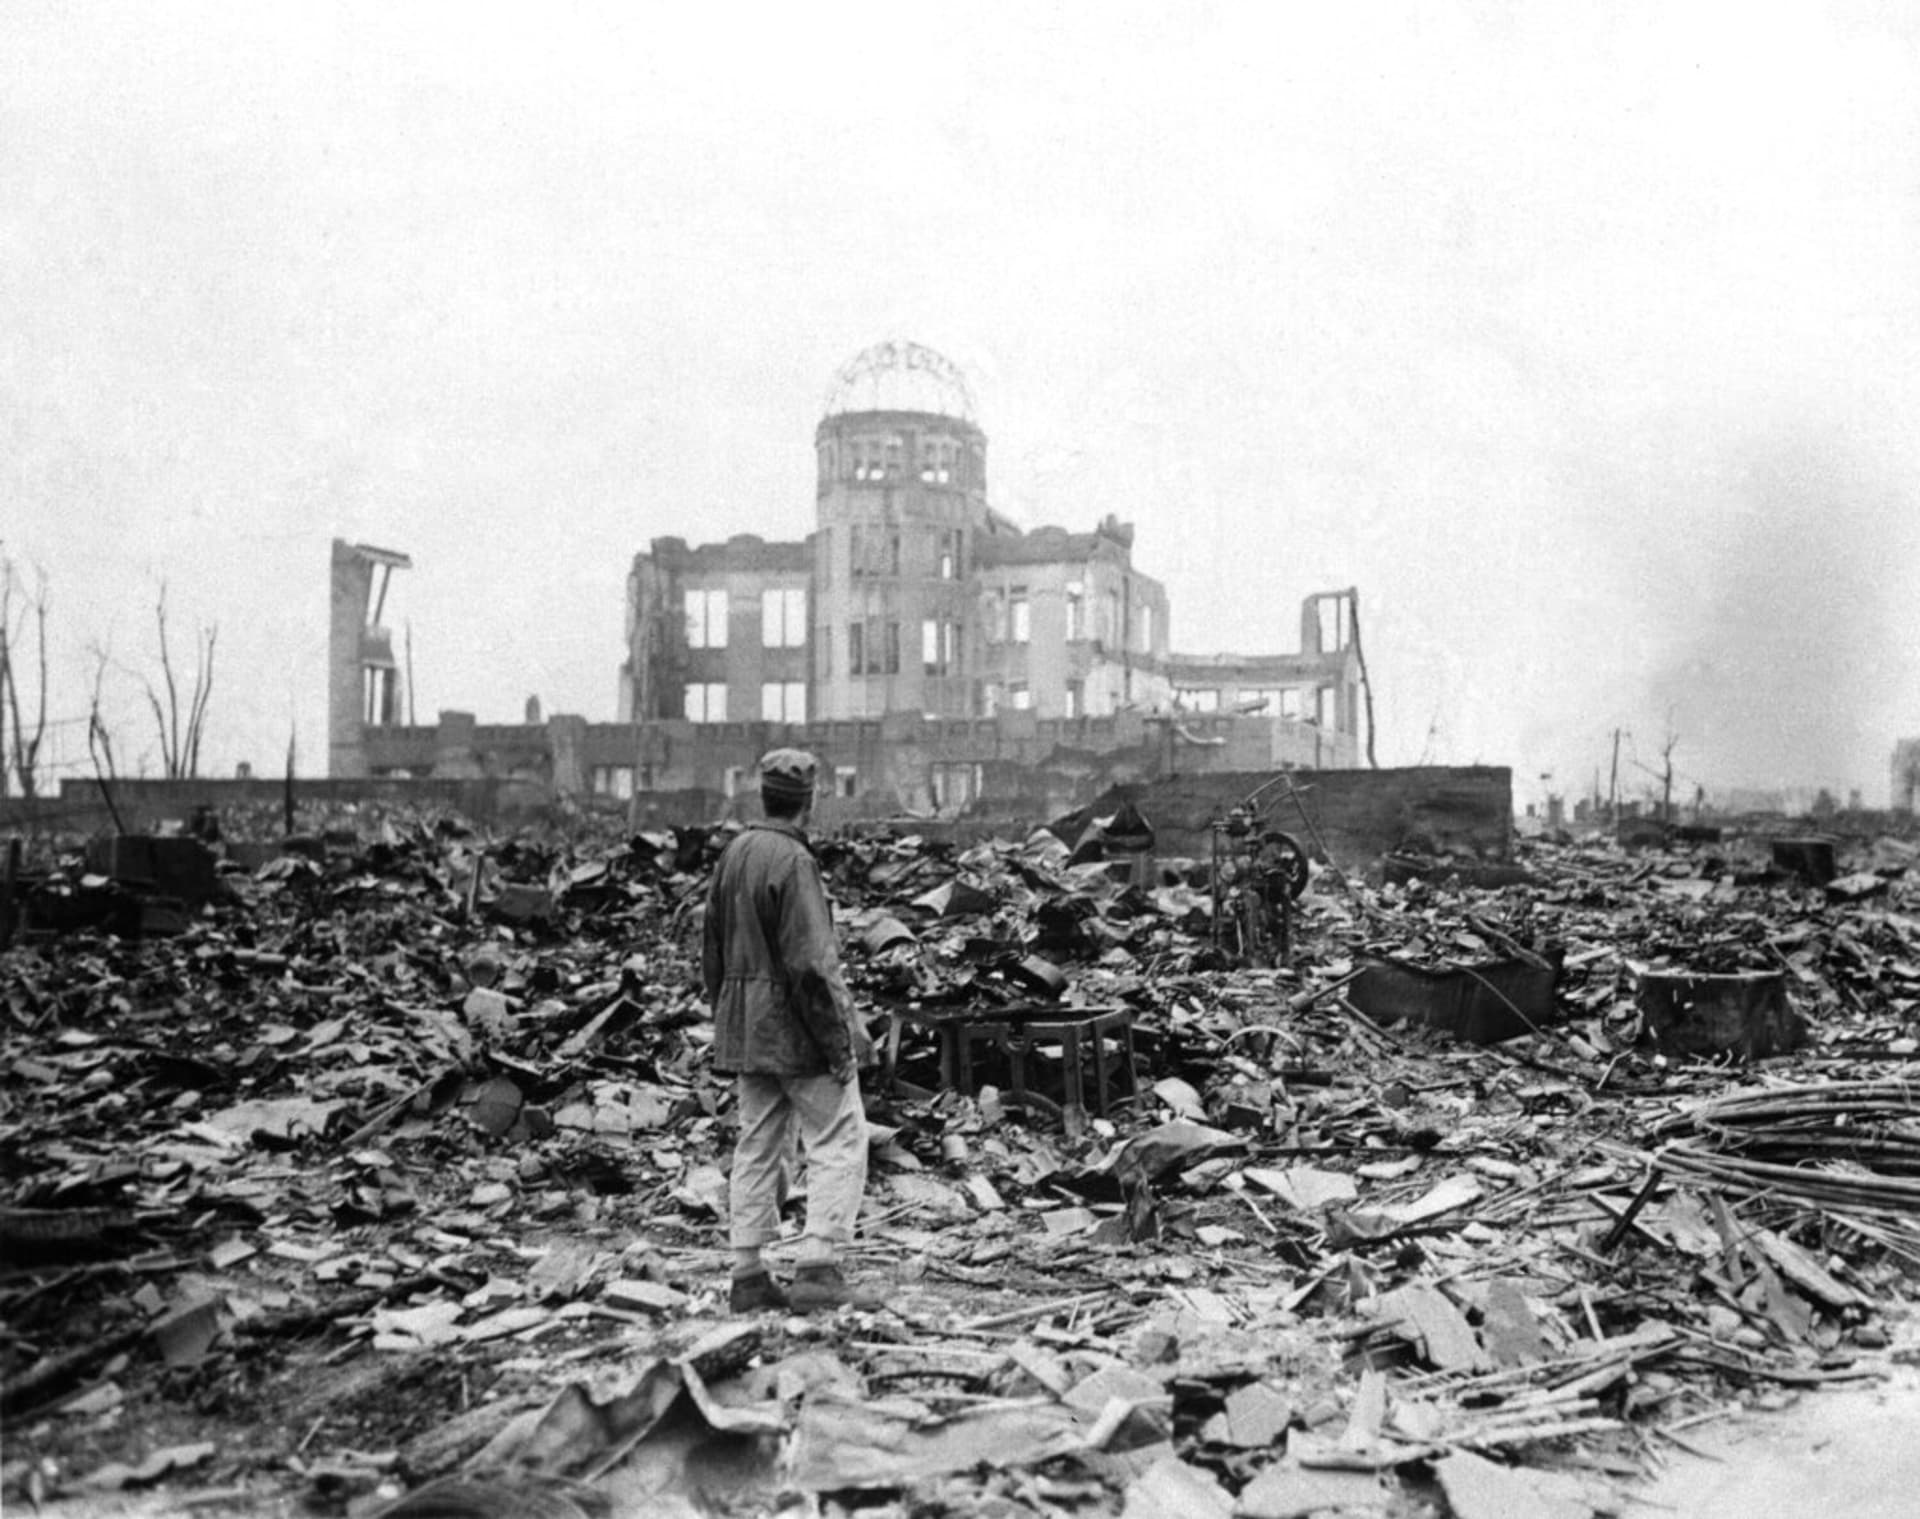 Takto vypadala Hirošima v roce 1945 po pádu atomové bomby.